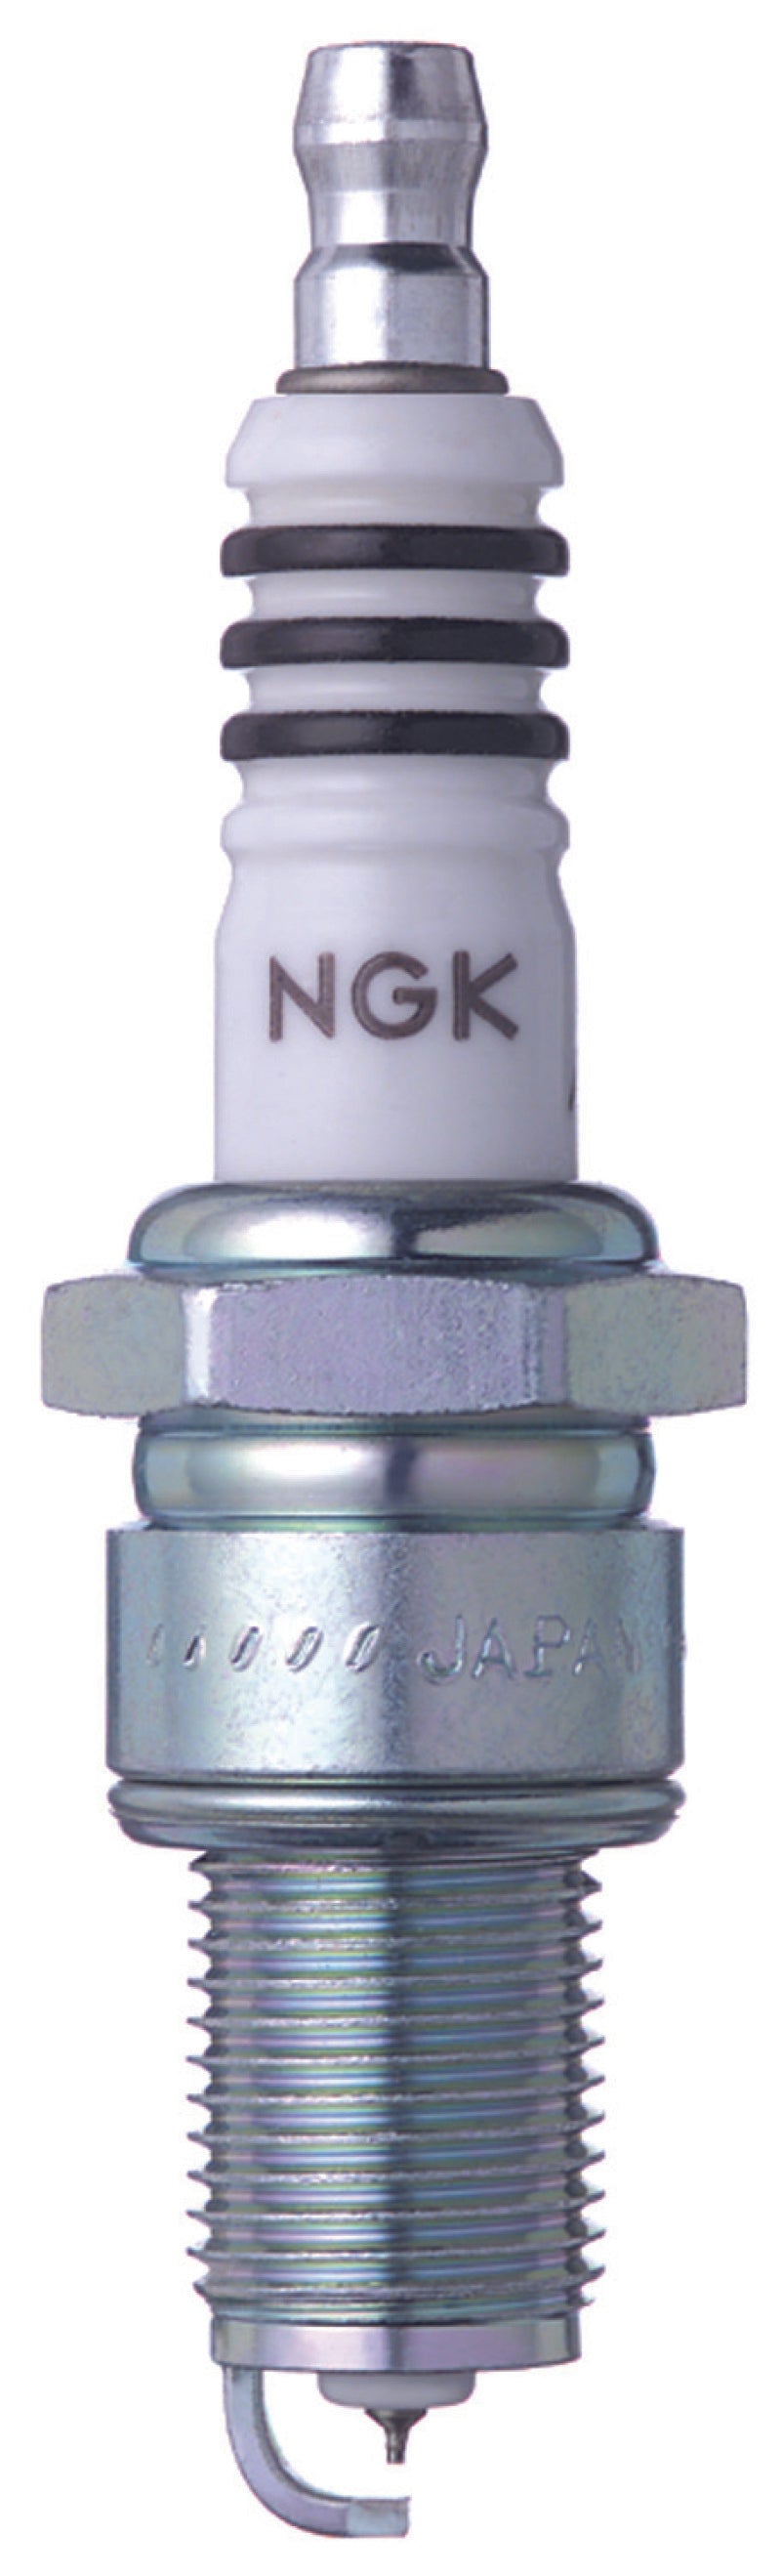 NGK IX Iridium Spark Plug Box of 4 (BPR8EIX).